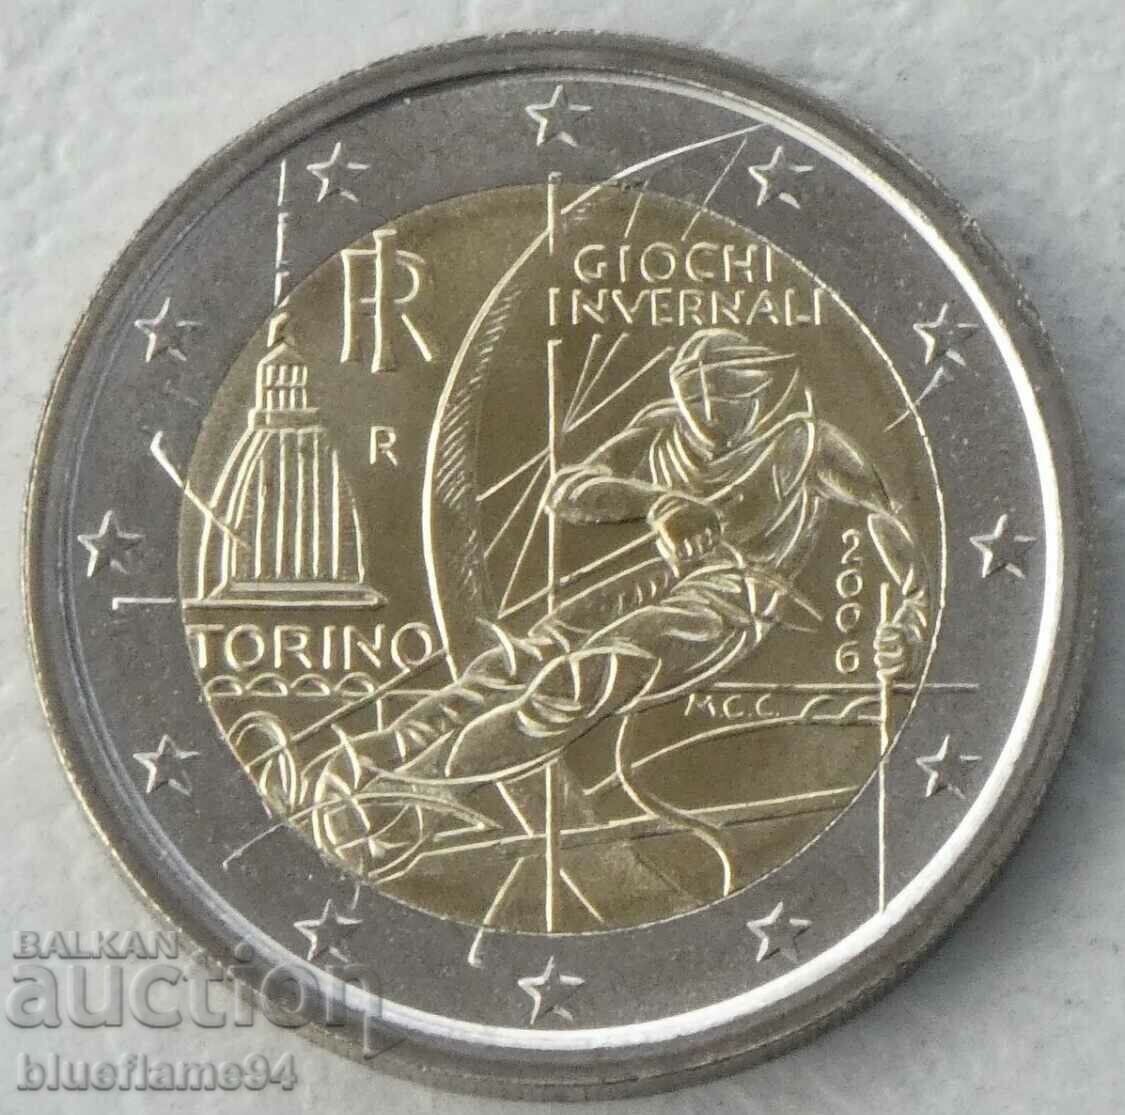 2 Euro Italy 2006